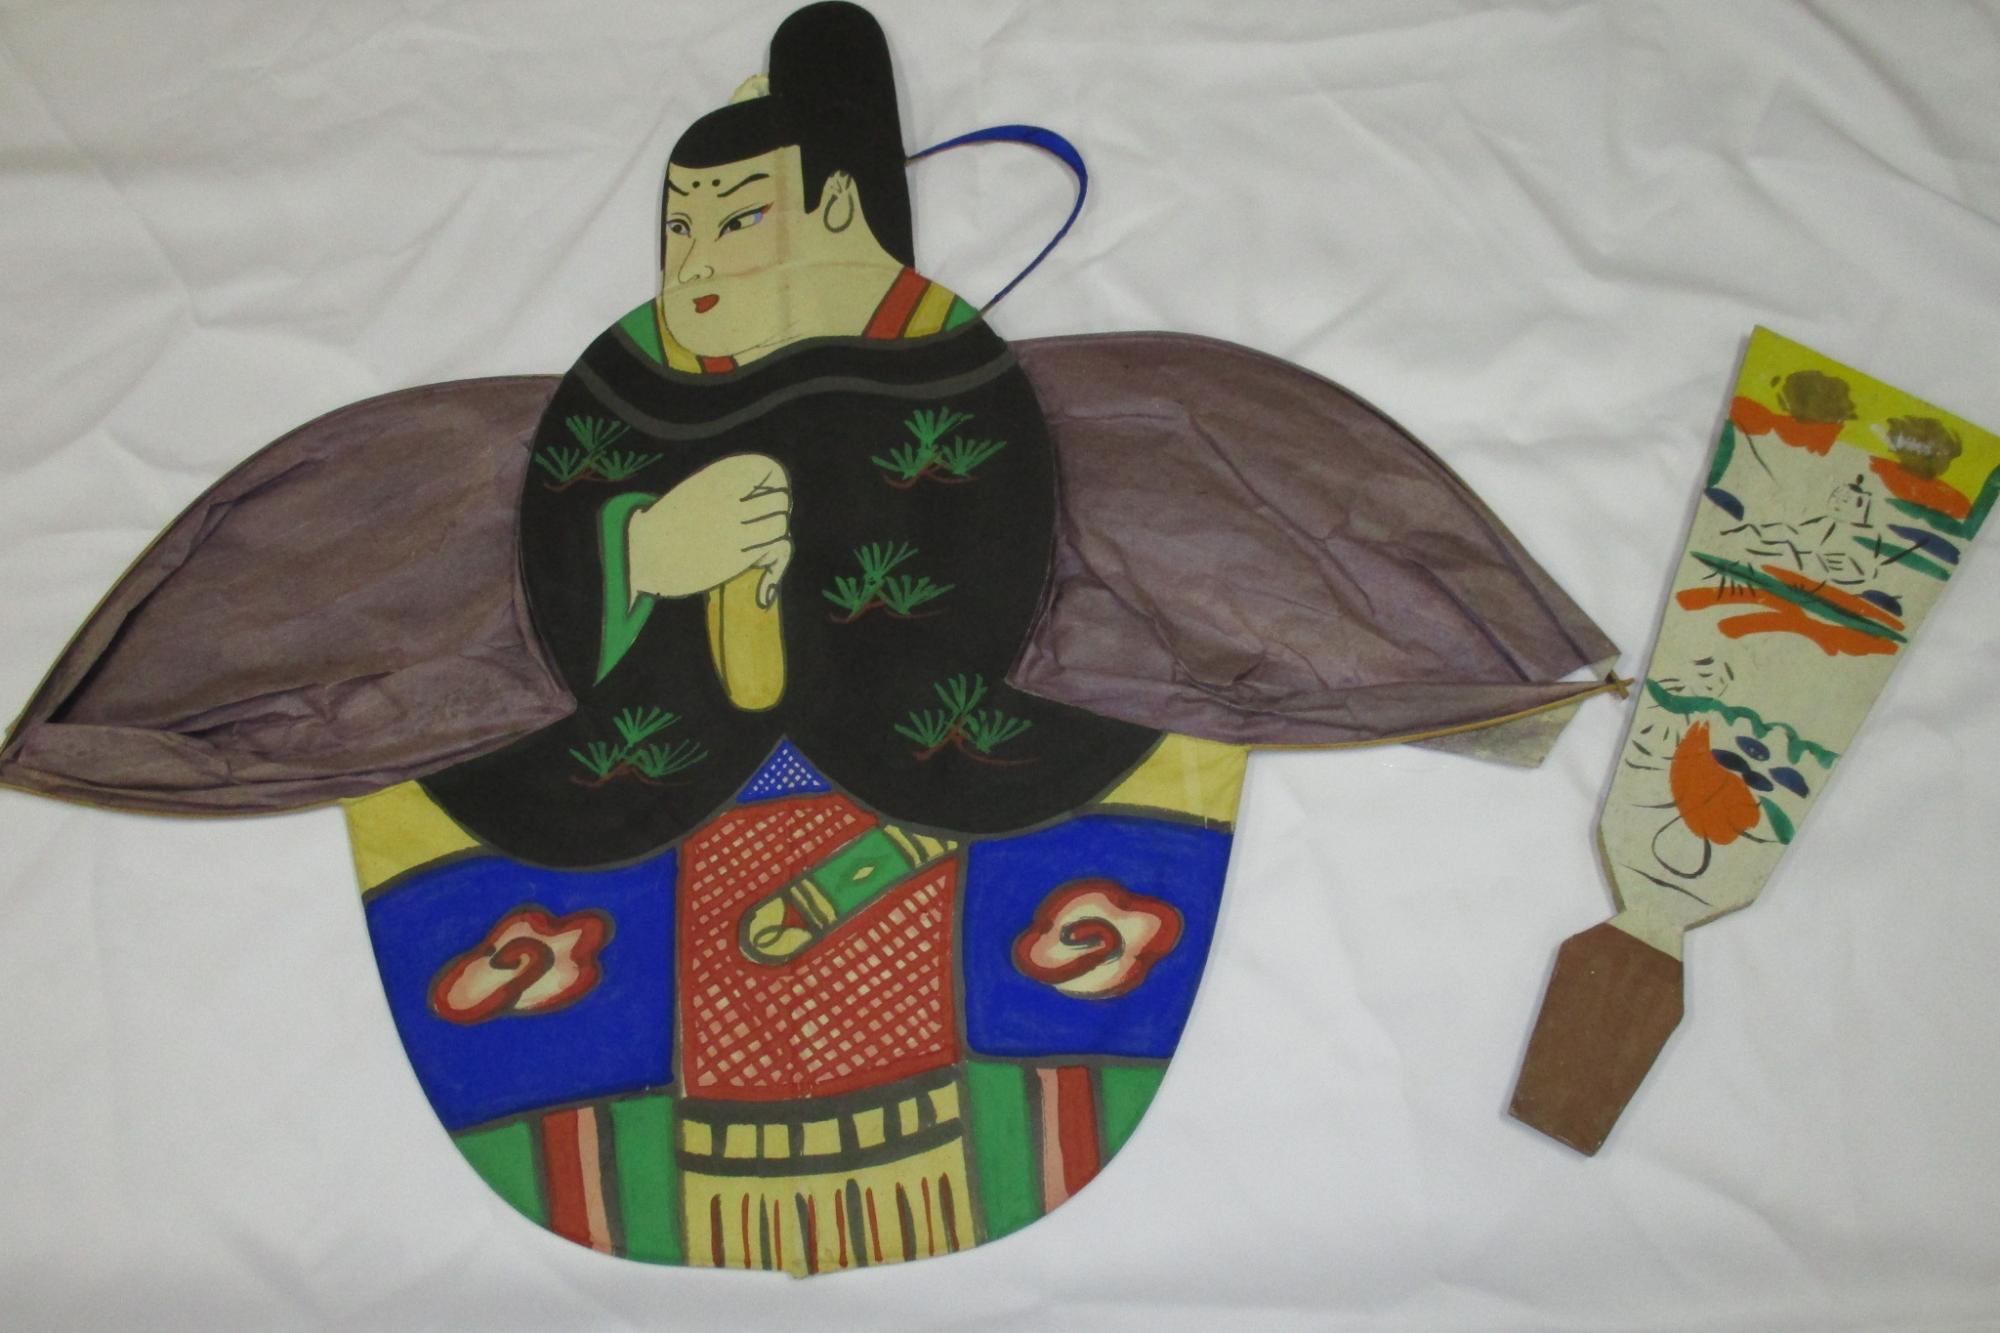 三河武士のやかた家康館で「江戸時代の遊び展」を開催します。